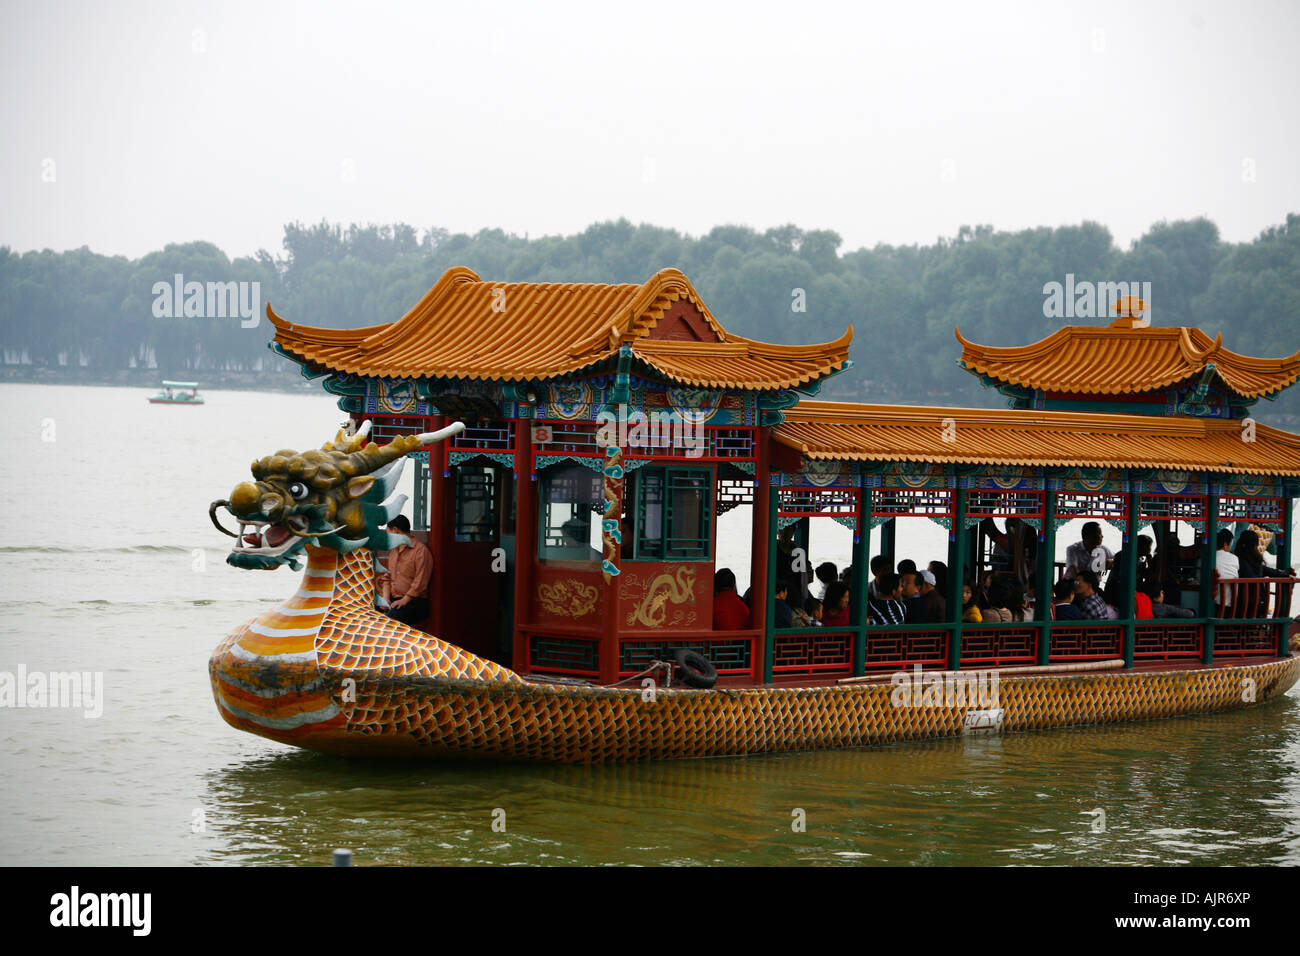 Bateaux au lac Kunming au Palais d'Eté park Beijing Chine Banque D'Images